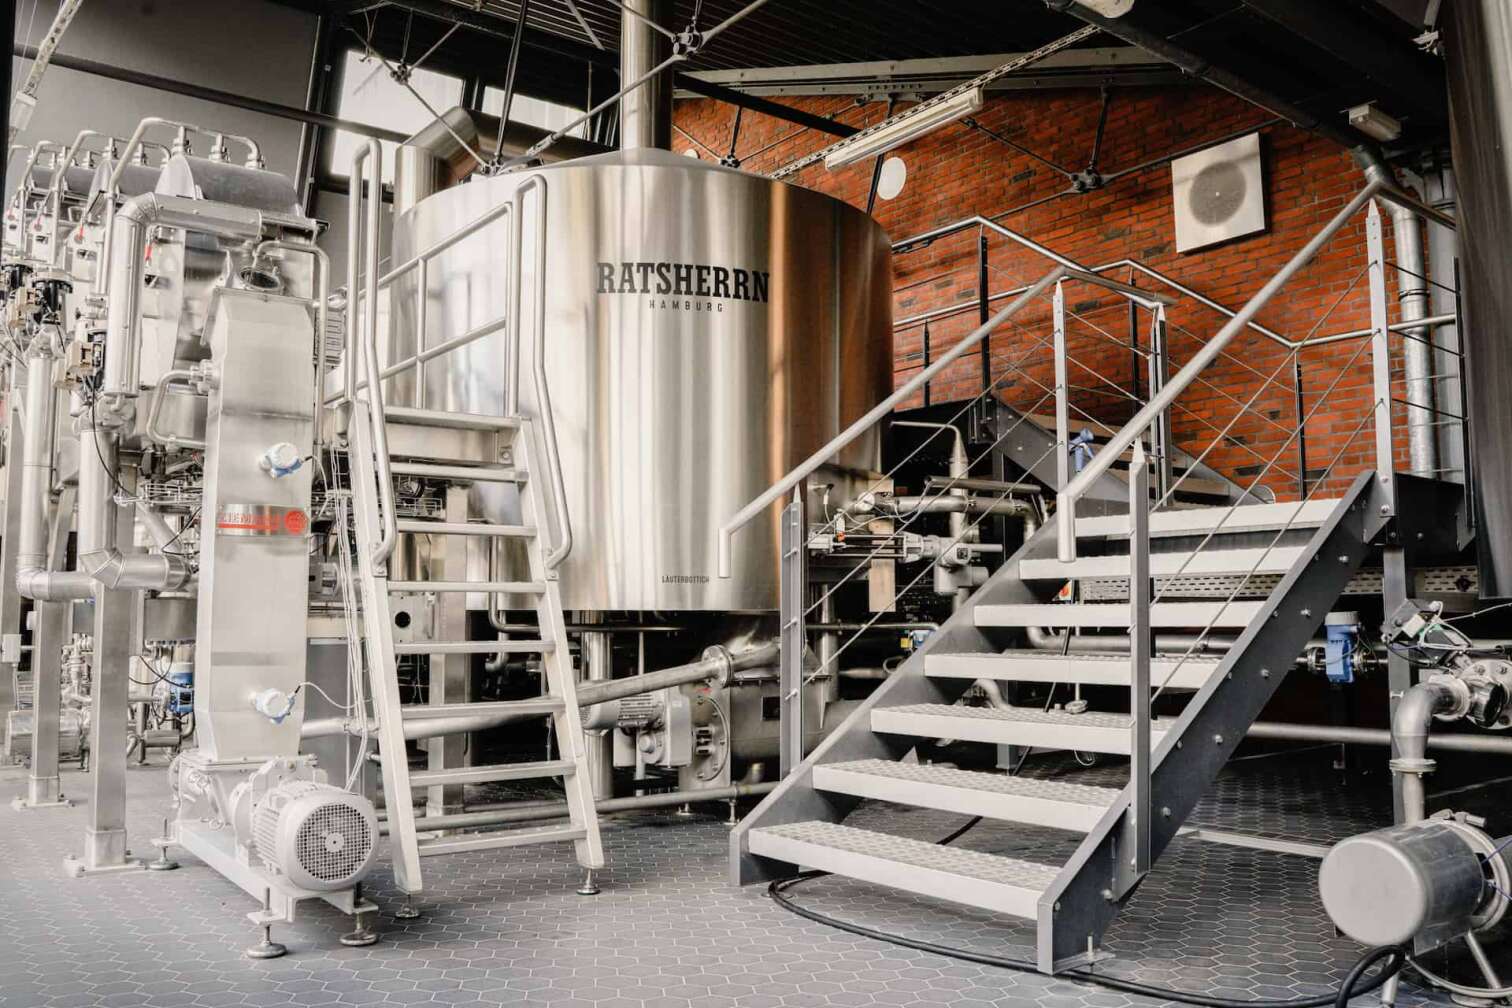 Bild aus dem Inneren der Hamburger Brauerei Ratsherrn im Rahmen einer Brauereiführung, zu sehen sind Kessel und Treppen in einem roten Backsteingebäude